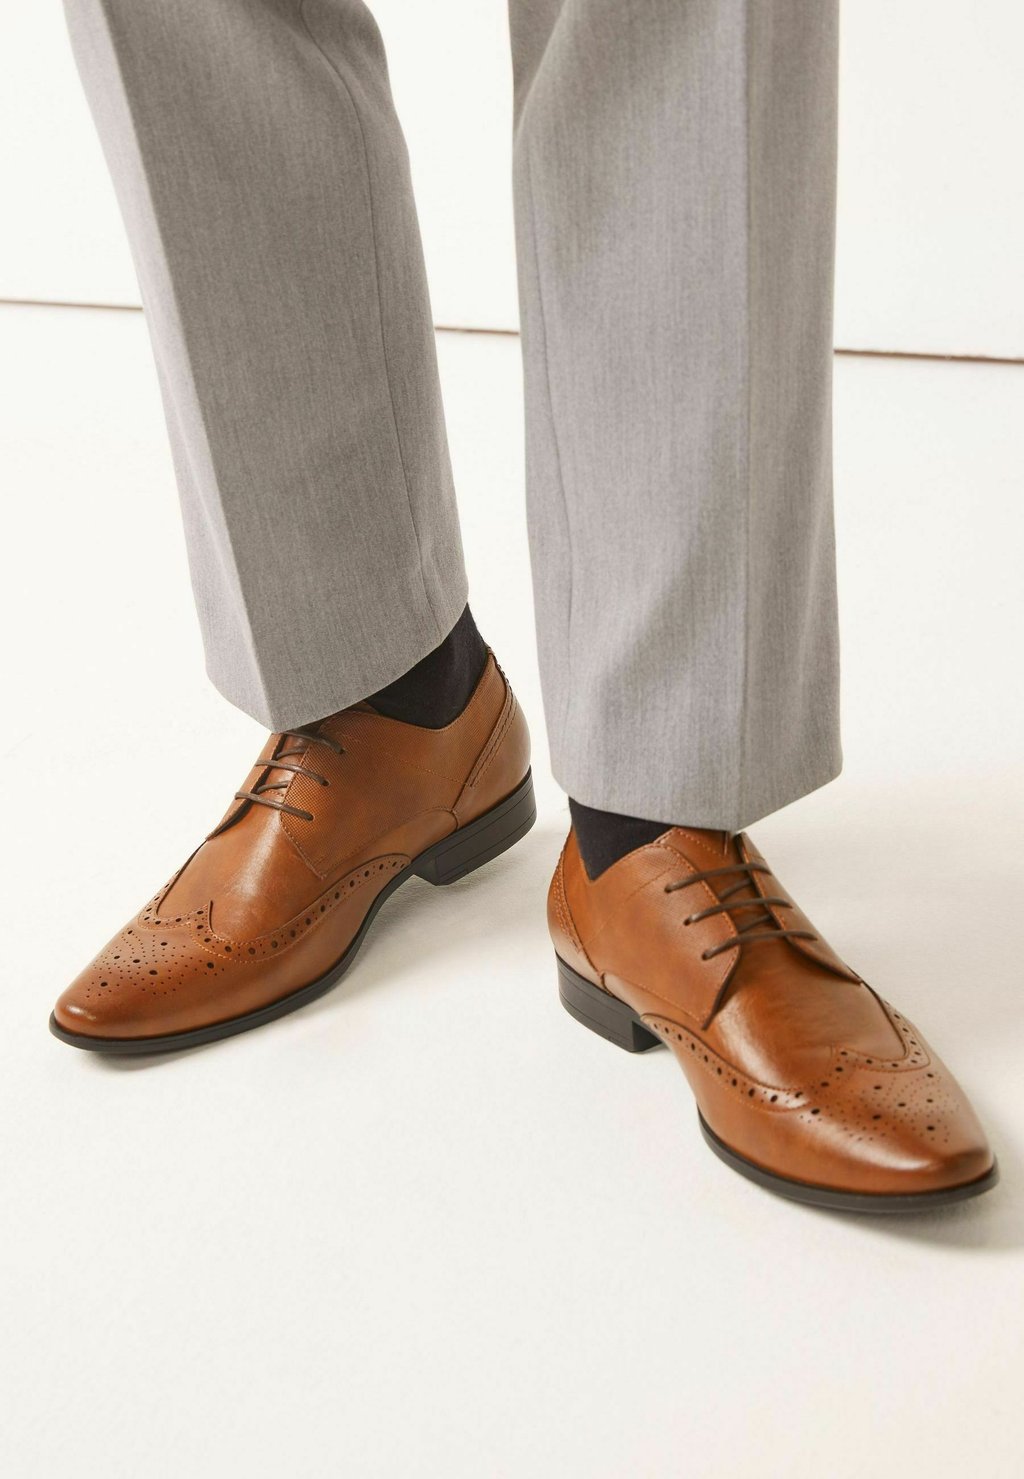 цена Элегантные туфли на шнуровке Wide Fit Brogue Shoes Next, цвет tan brown